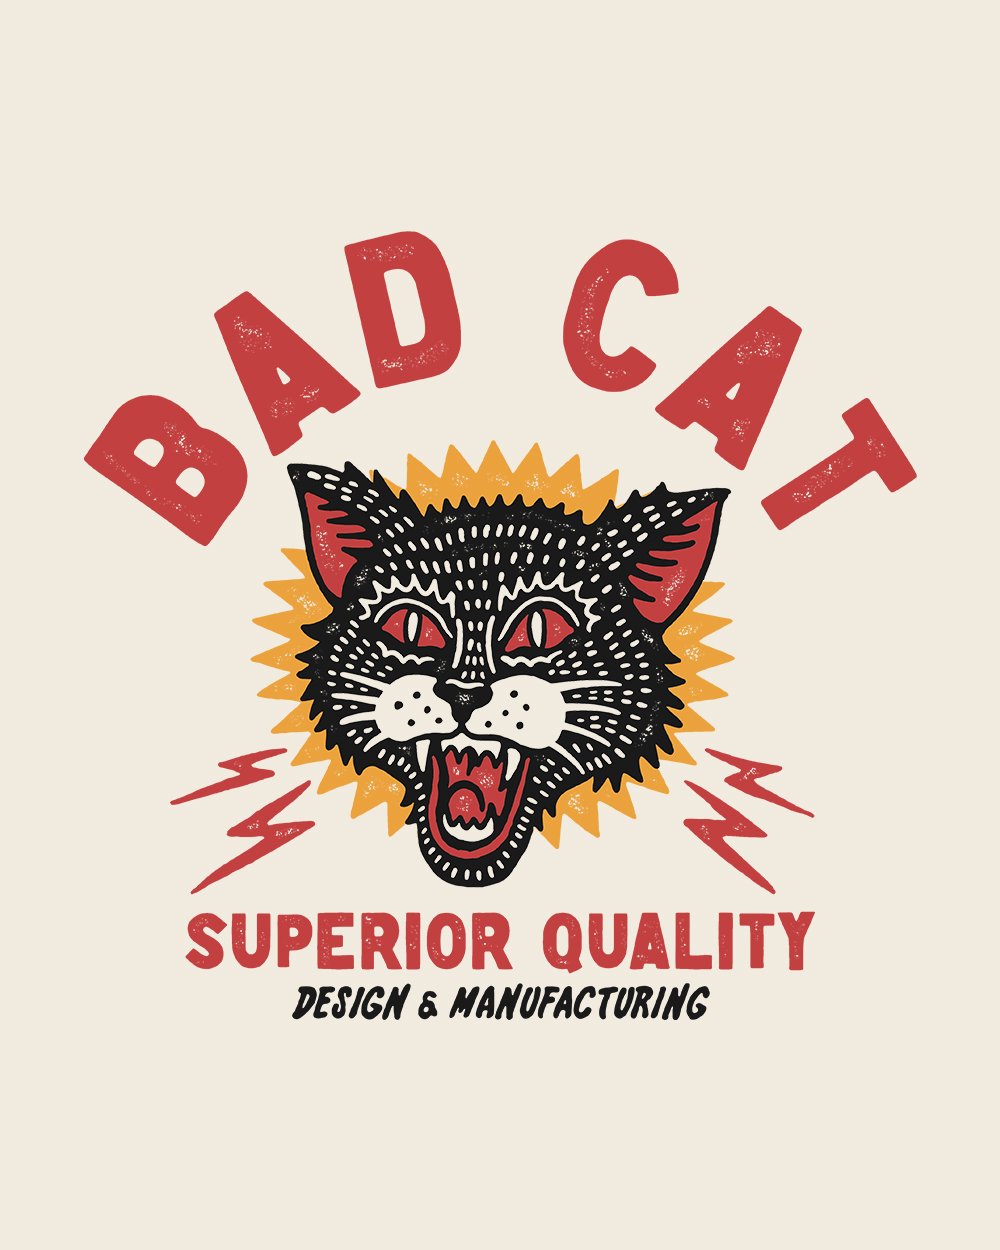 Bad Cat T-Shirt Australia Online #colour_natural